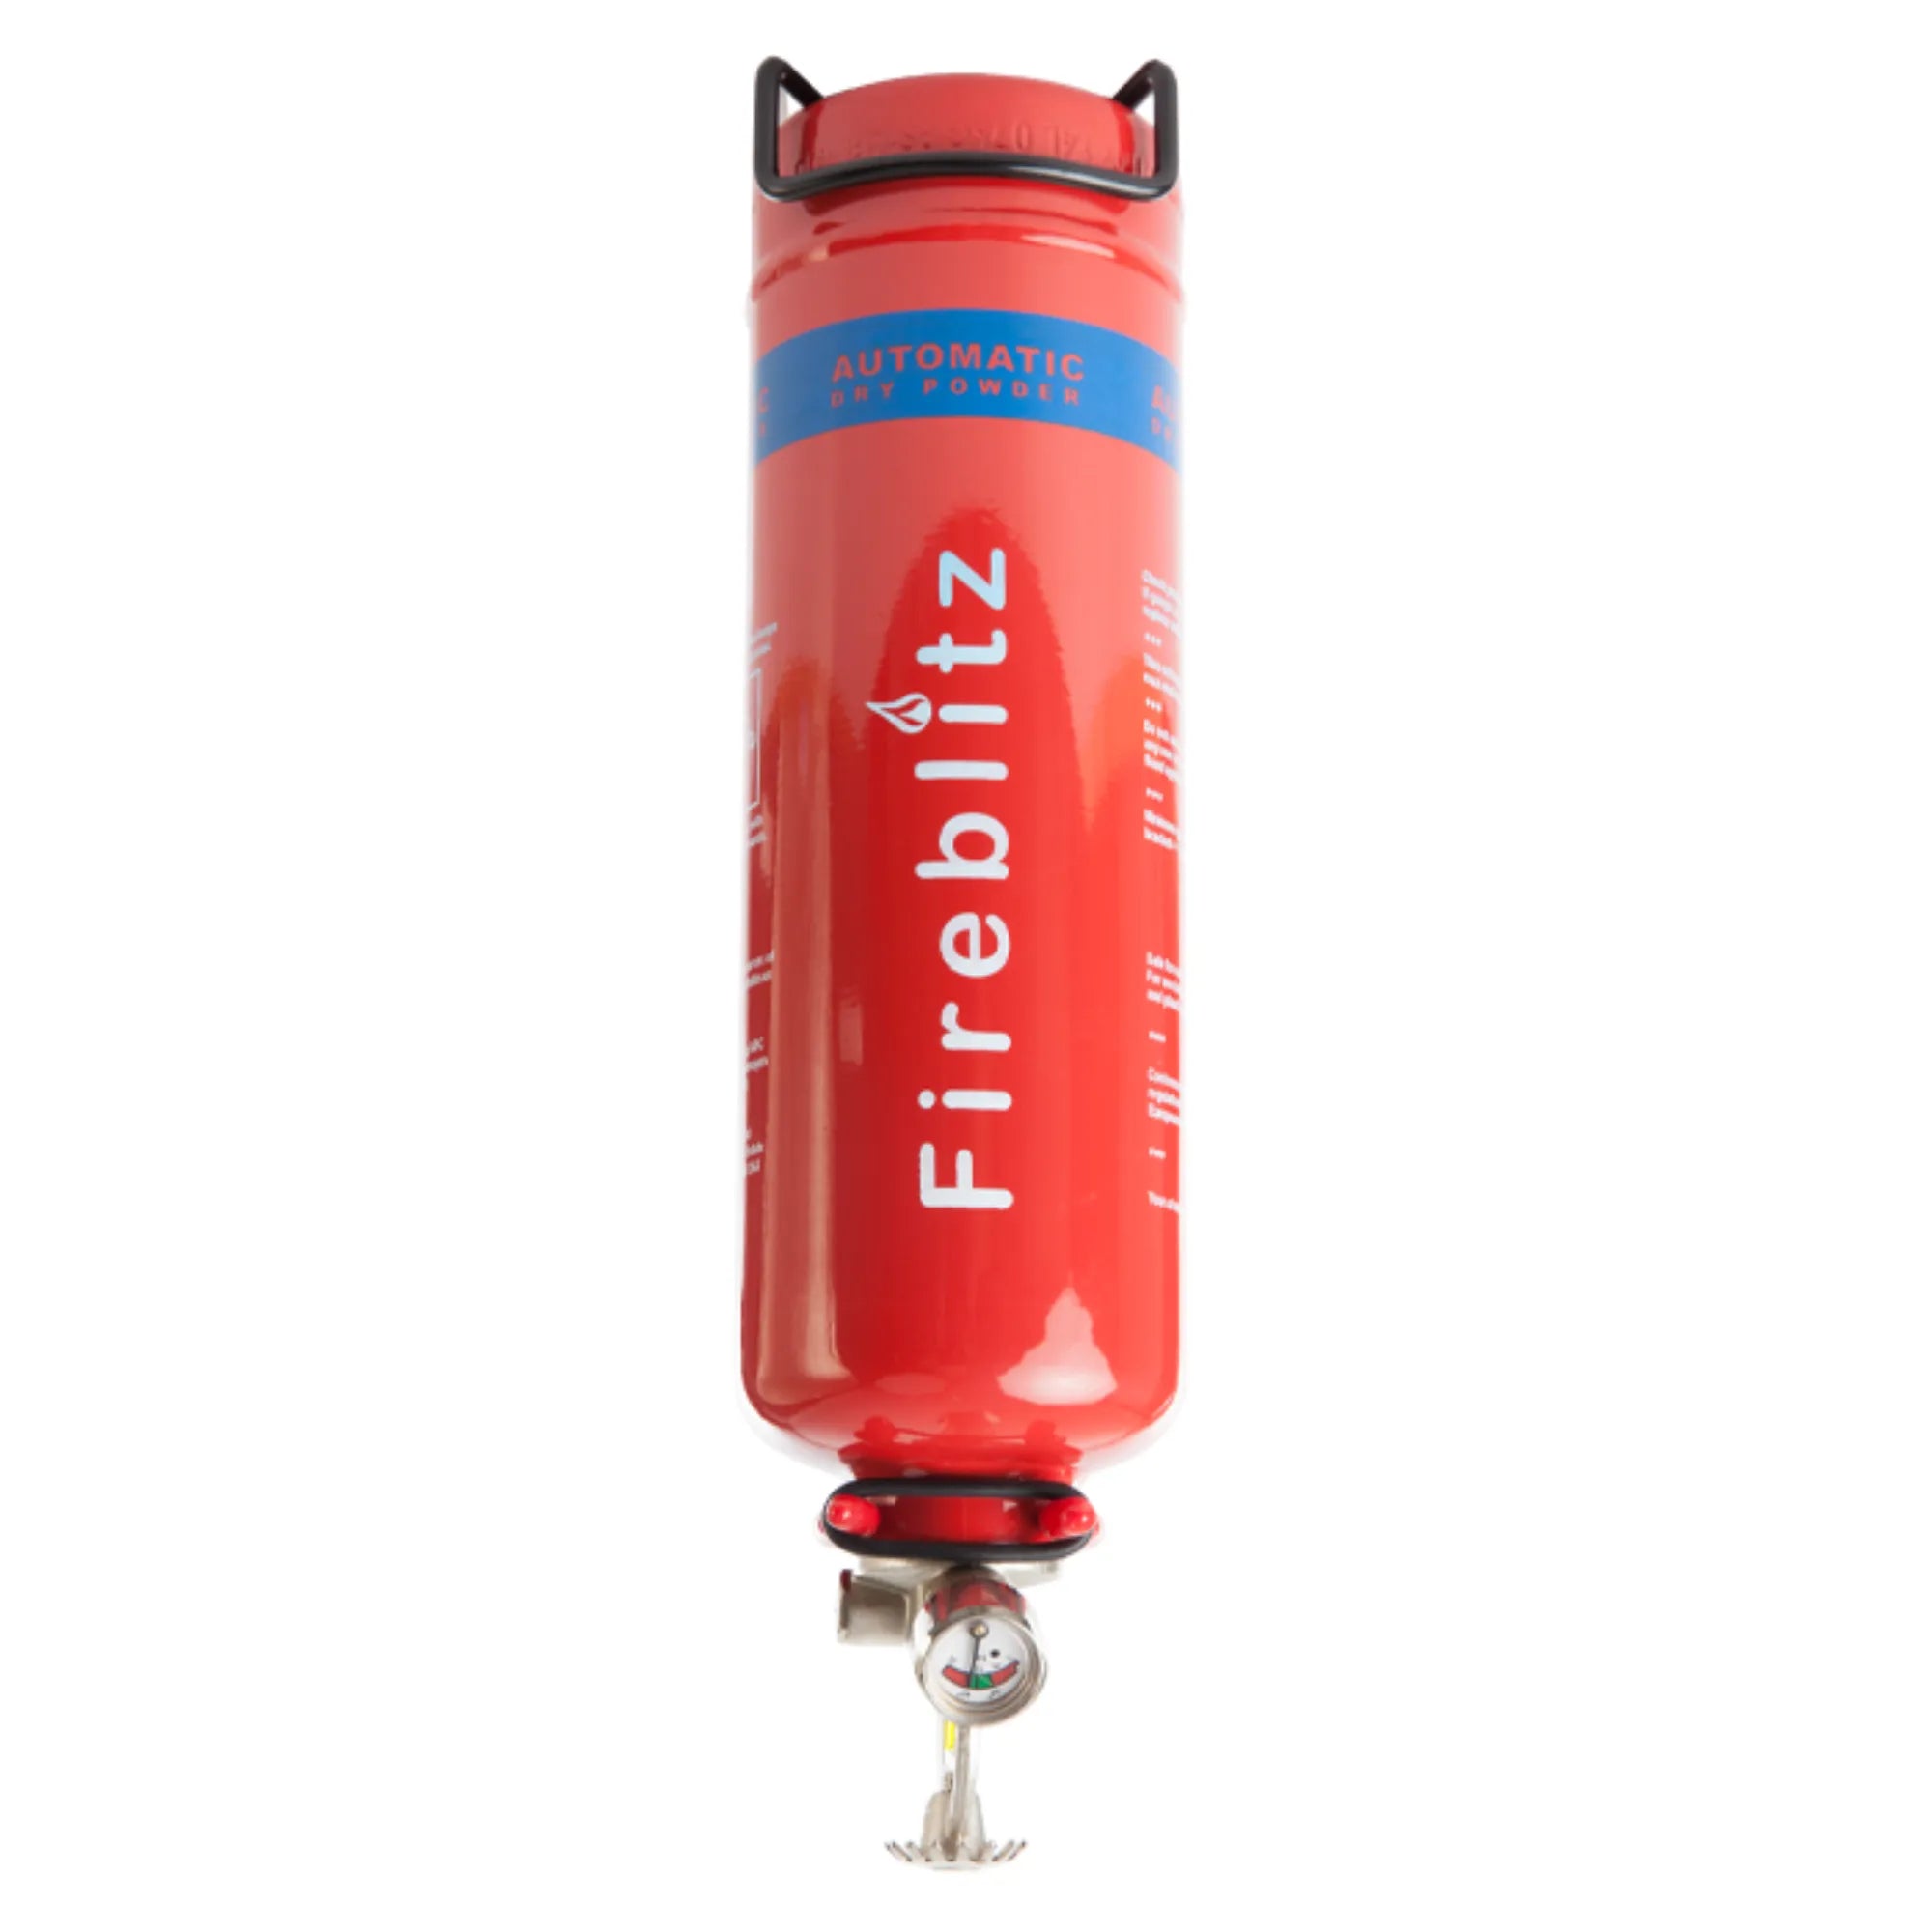 1 kg Powder Auto Fire Extinguisher